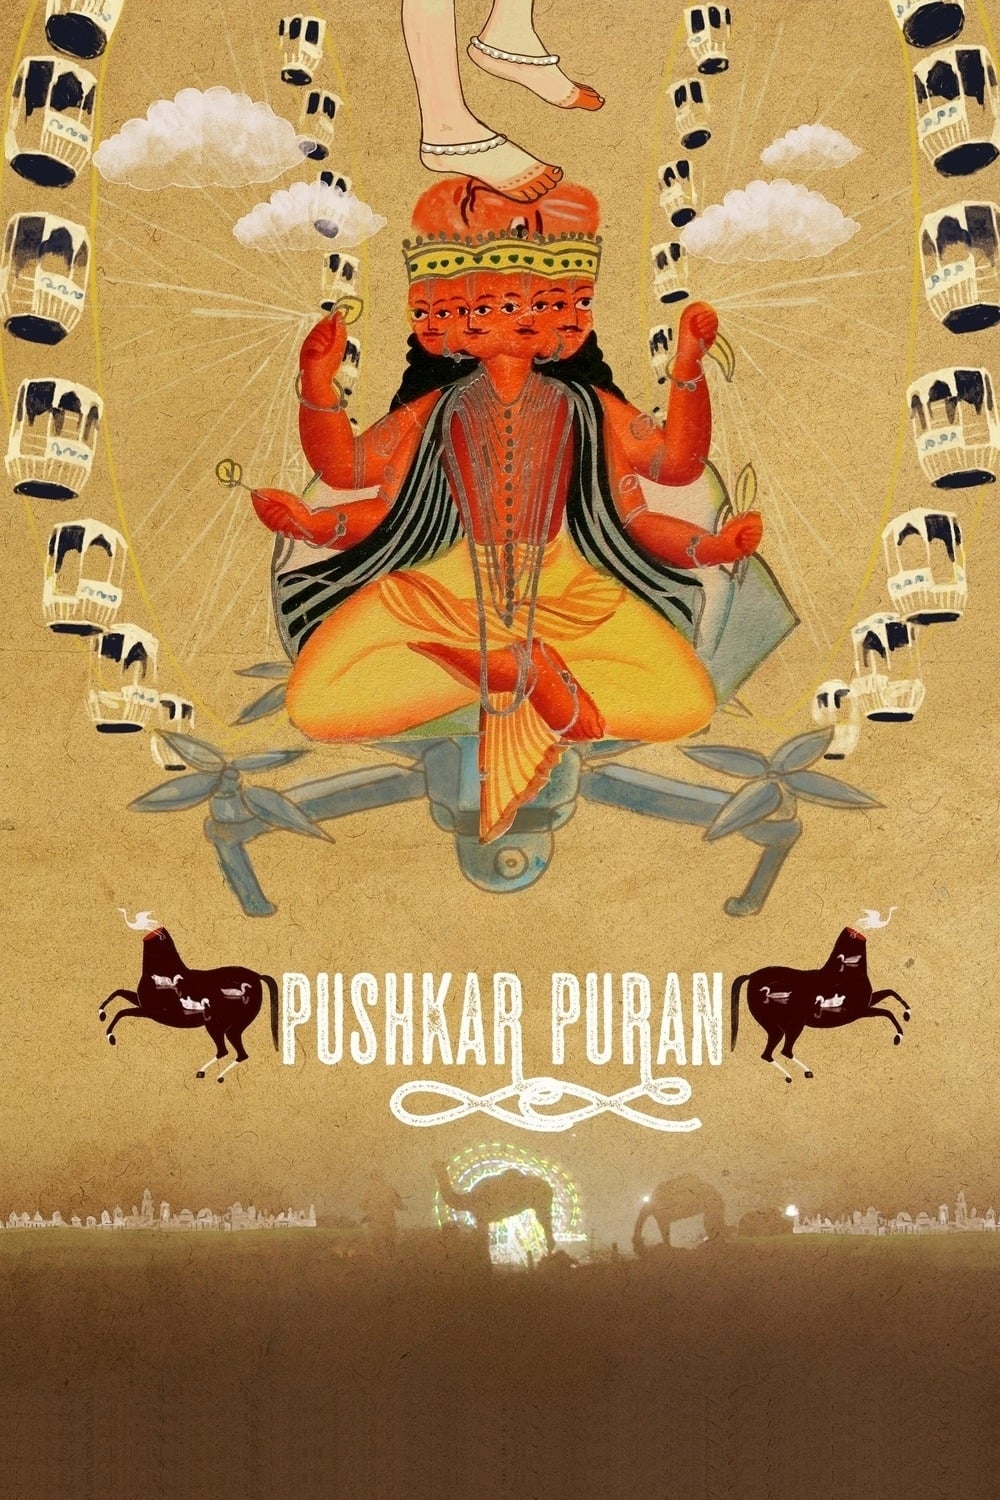 Pushkar Puran